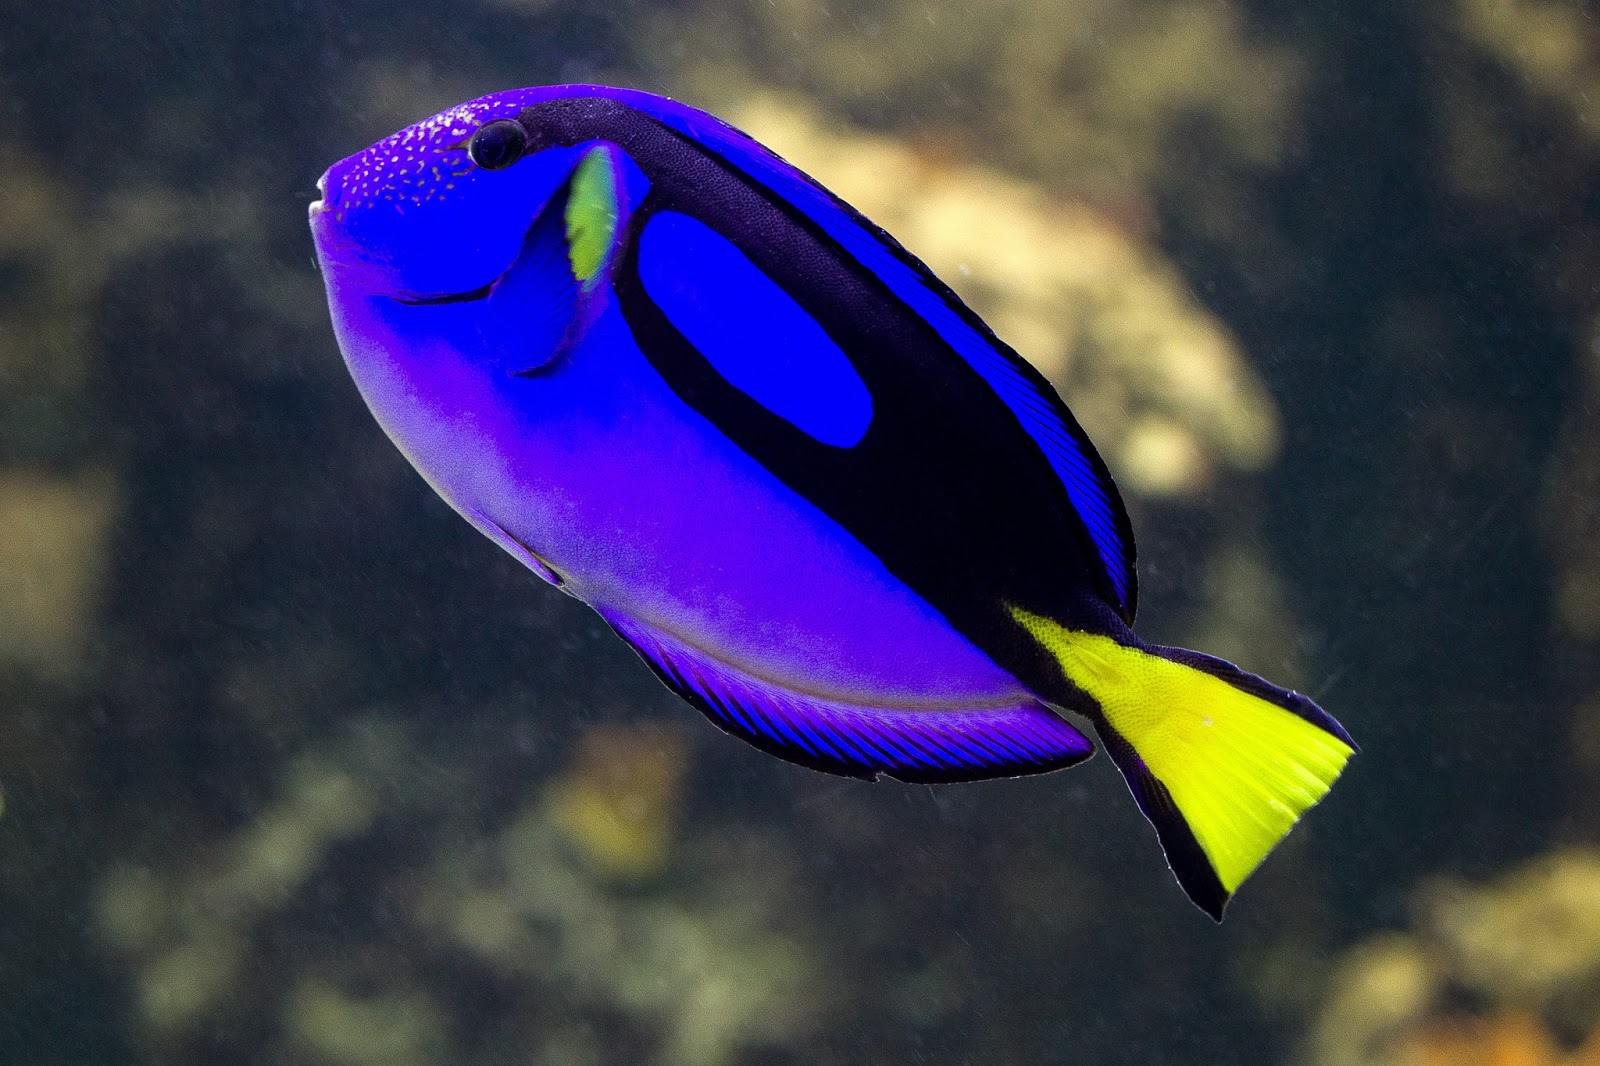 سمكة لونها أزرق غامق جميلة